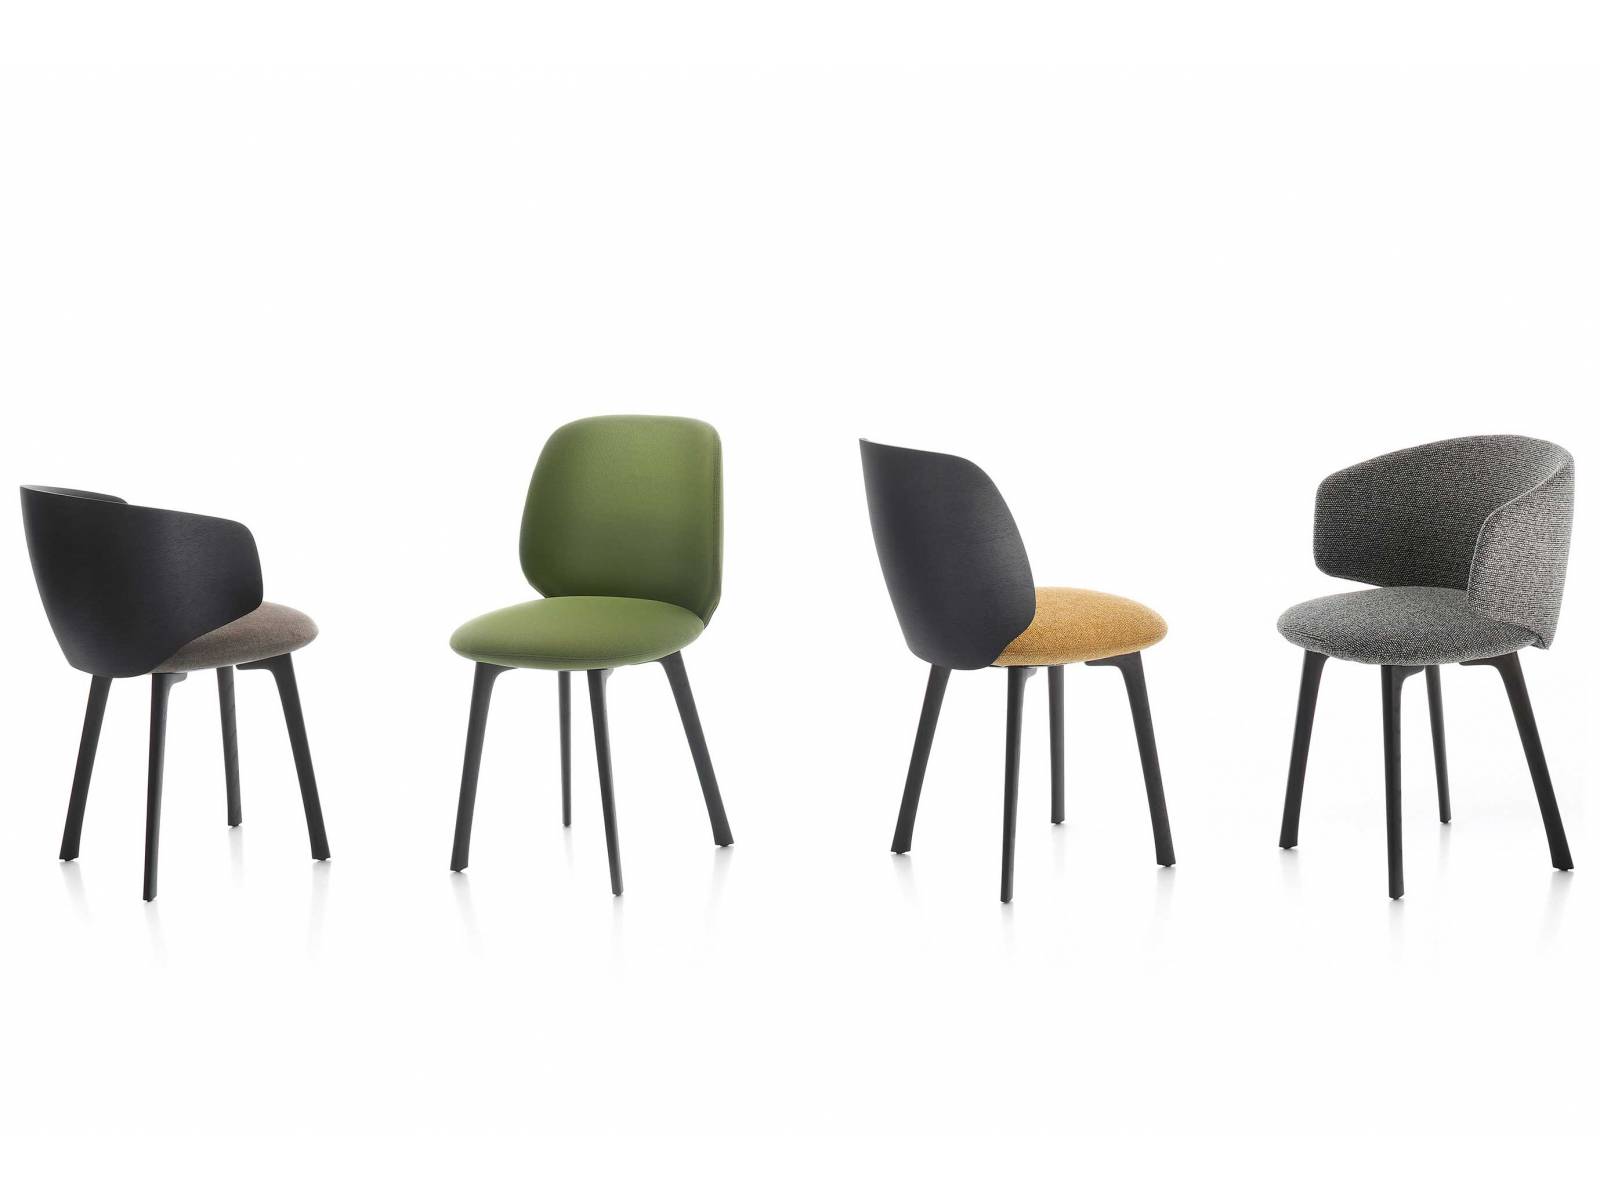 Die Stühle aus der neuen «Universal Collection» lassen sich vielfältig einsetzen – sowohl im Privat- als auch Objektbereich. Herzstück des Möbels ist der scheibenförmige Sitz, der so konzipiert ist, dass unterschiedliche Rückenlehnen und Untergestelle damit kombiniert werden können. Design: Jean-Marie Massaud. Foto: LCBstudio. MDF ITALIA.